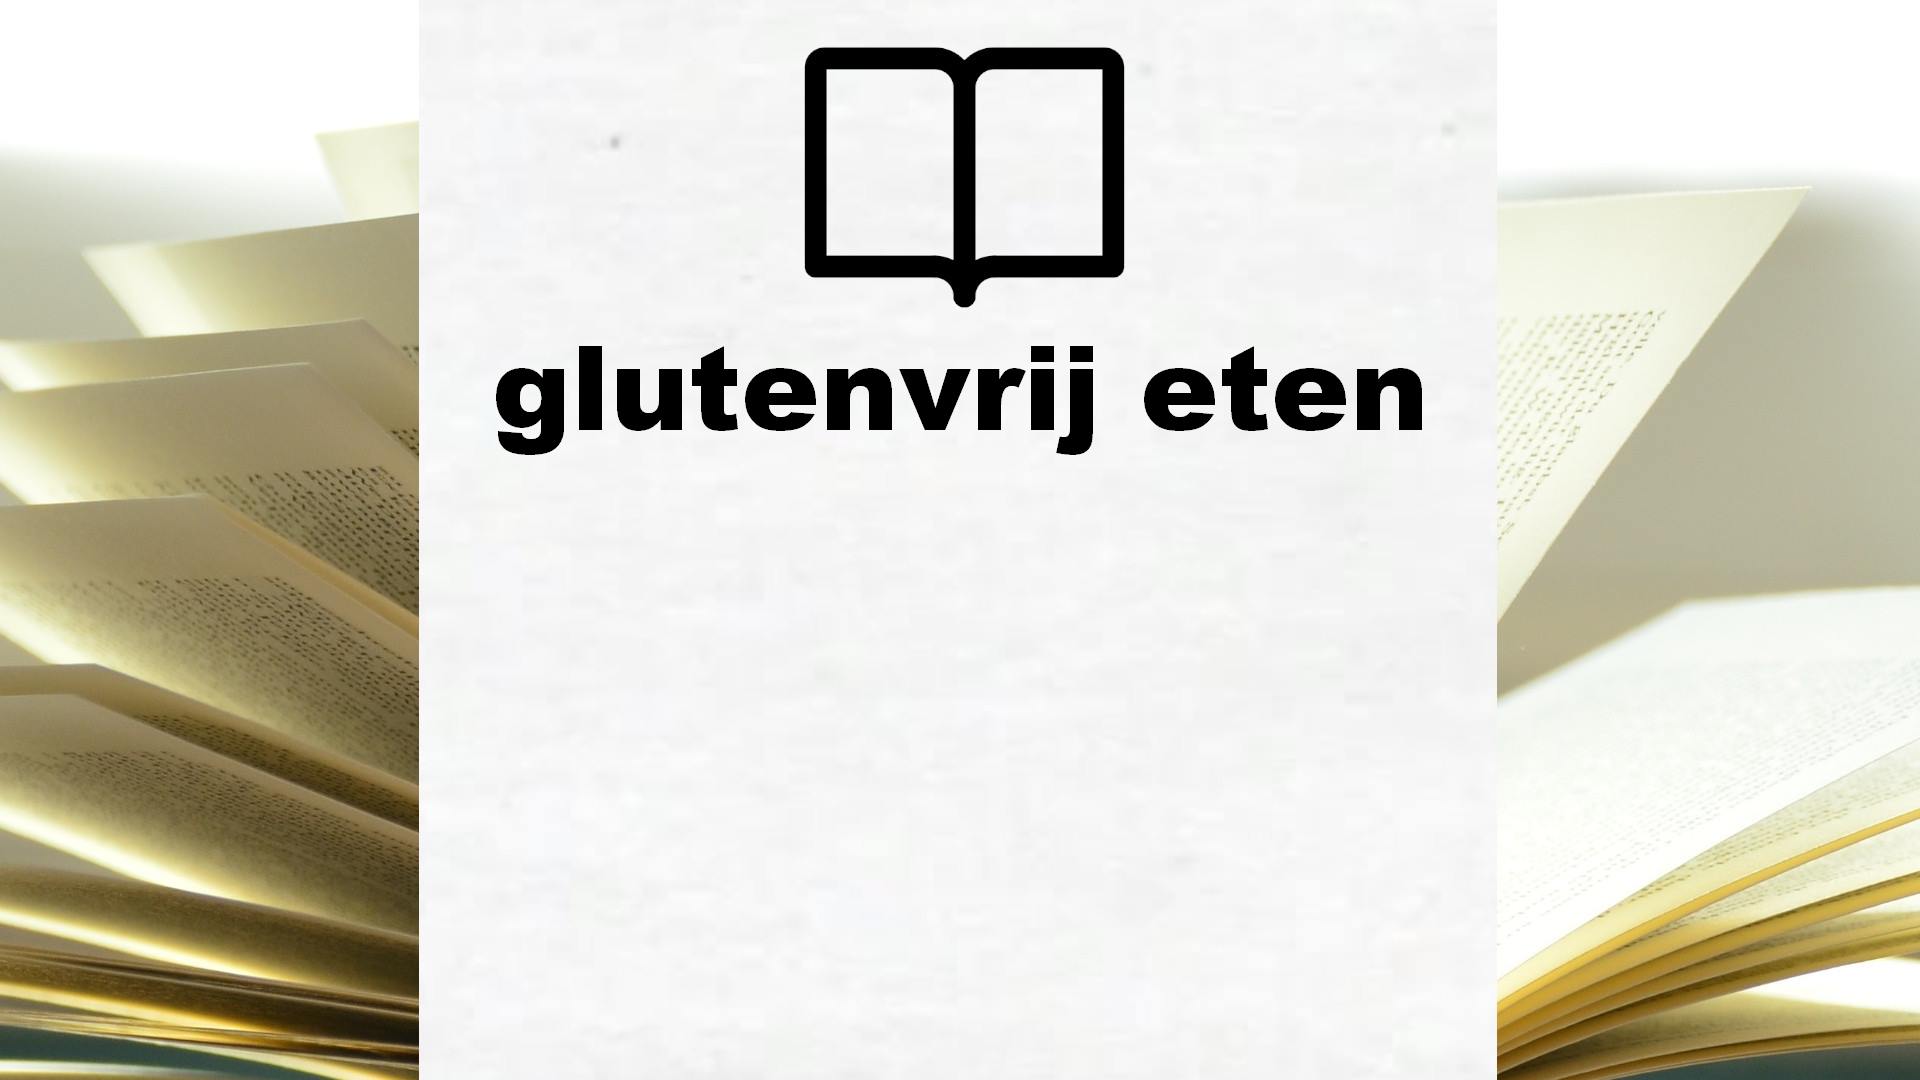 Boeken over glutenvrij eten